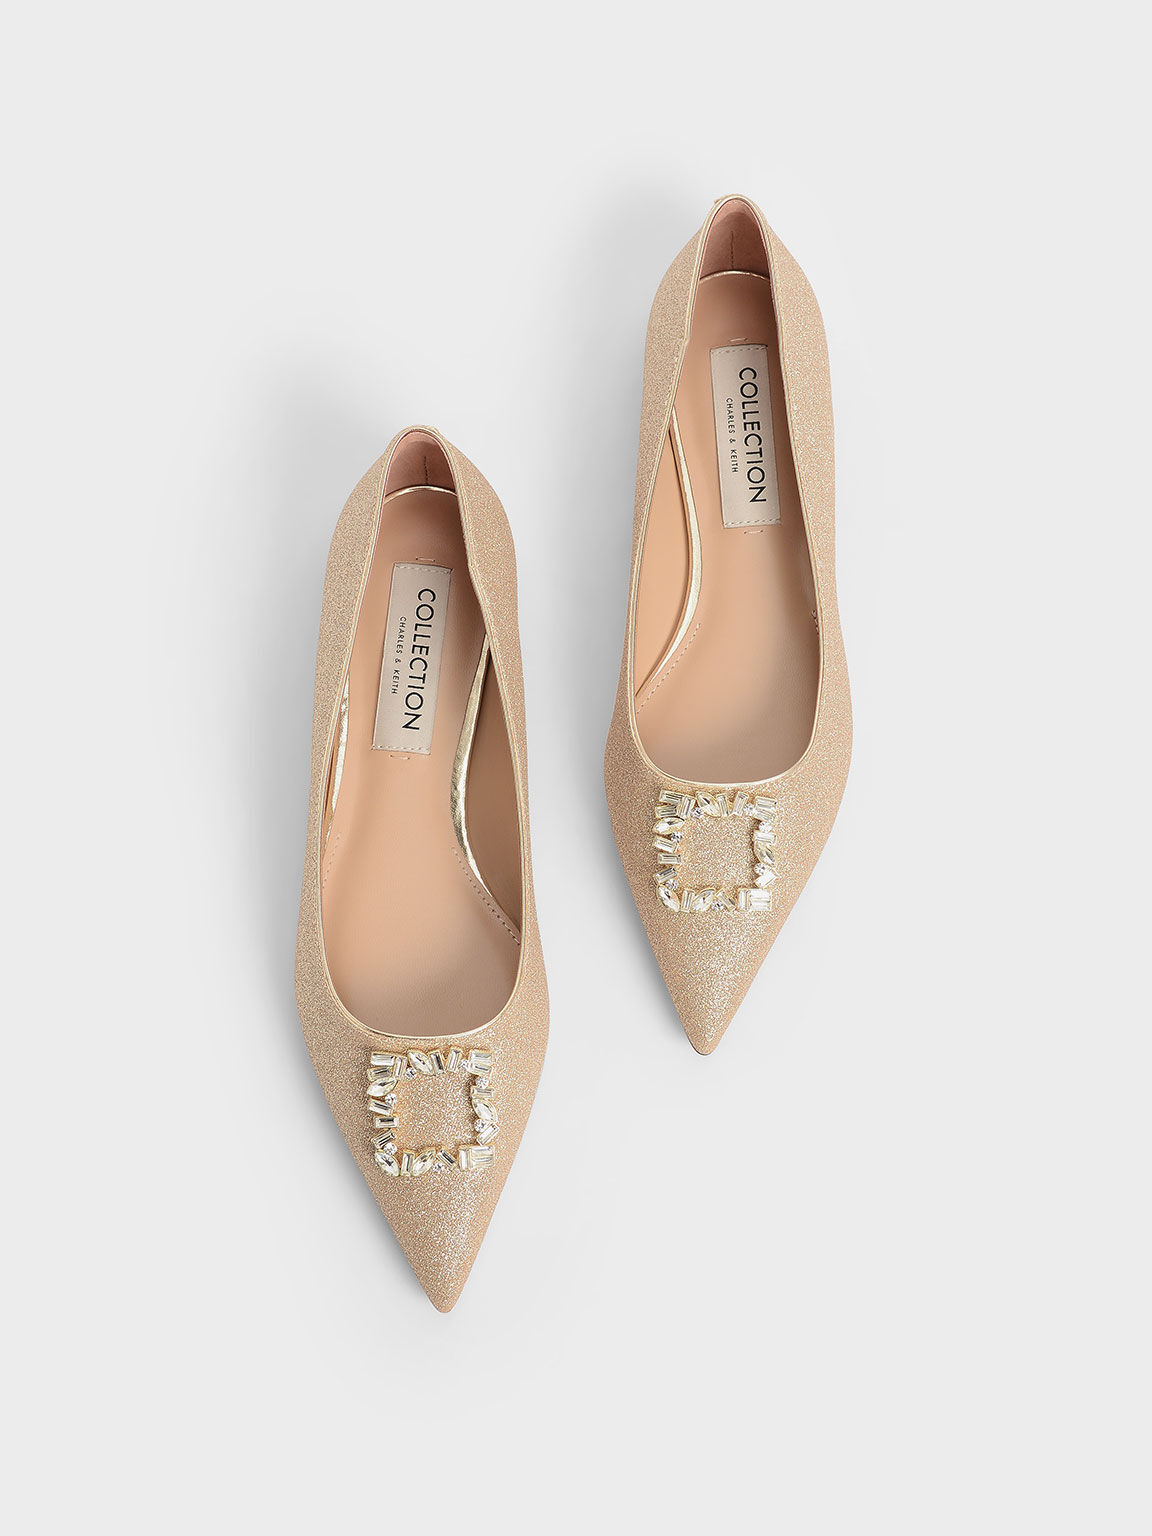 Zapatos planos con adornos de cristales en dorado para mujer - CHARLES & KEITH